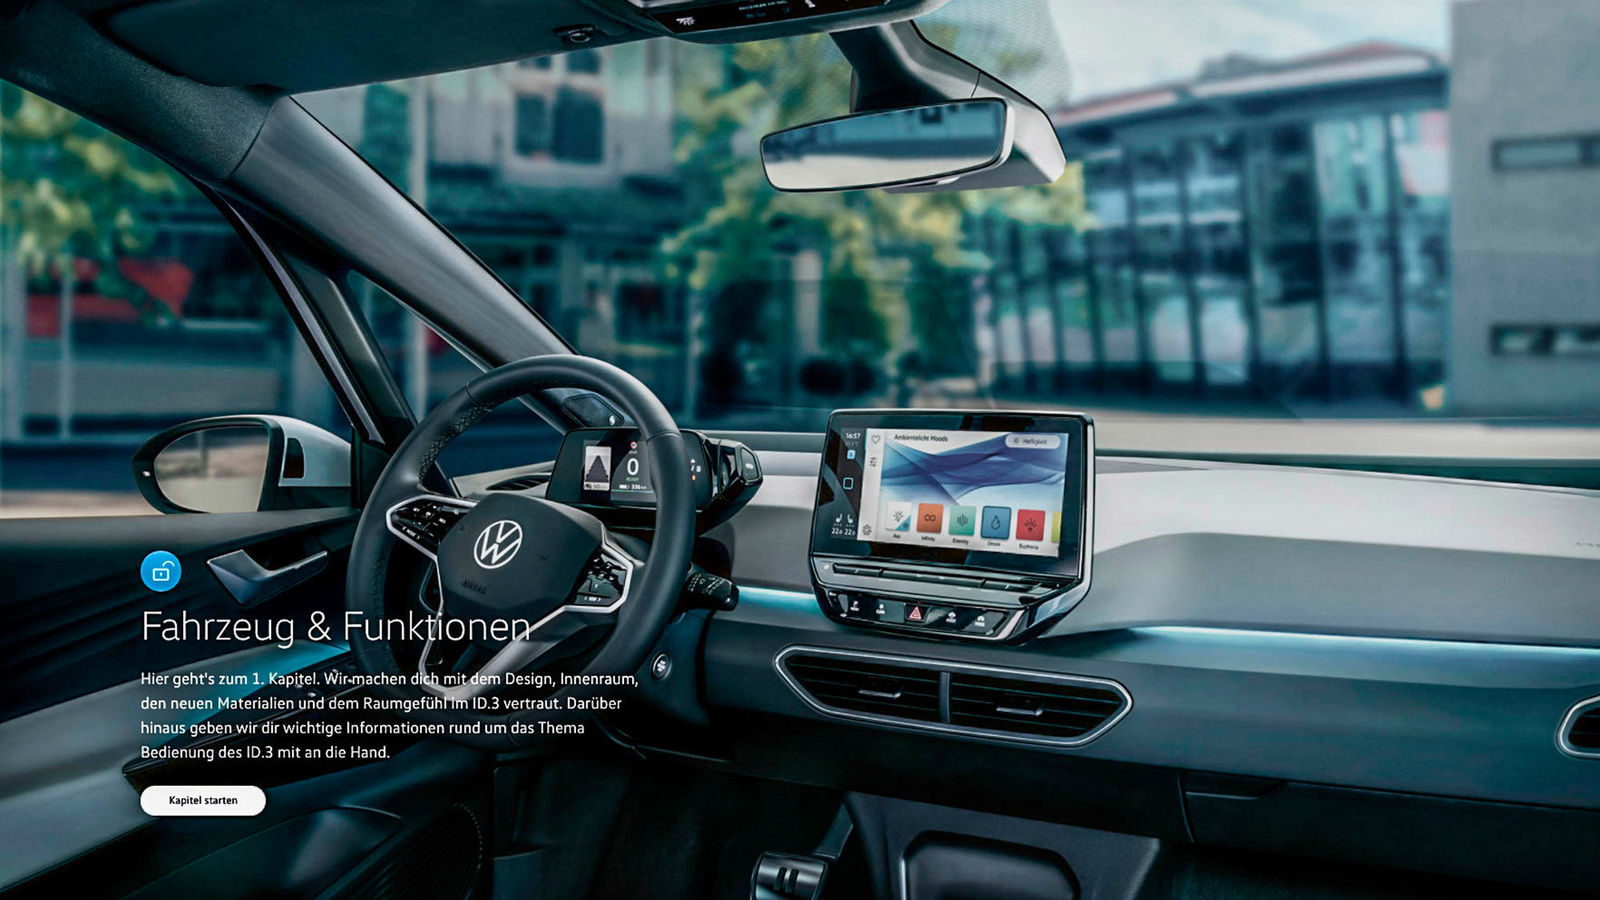 Story "Volkswagen bringt Automessen ins Wohnzimmer"